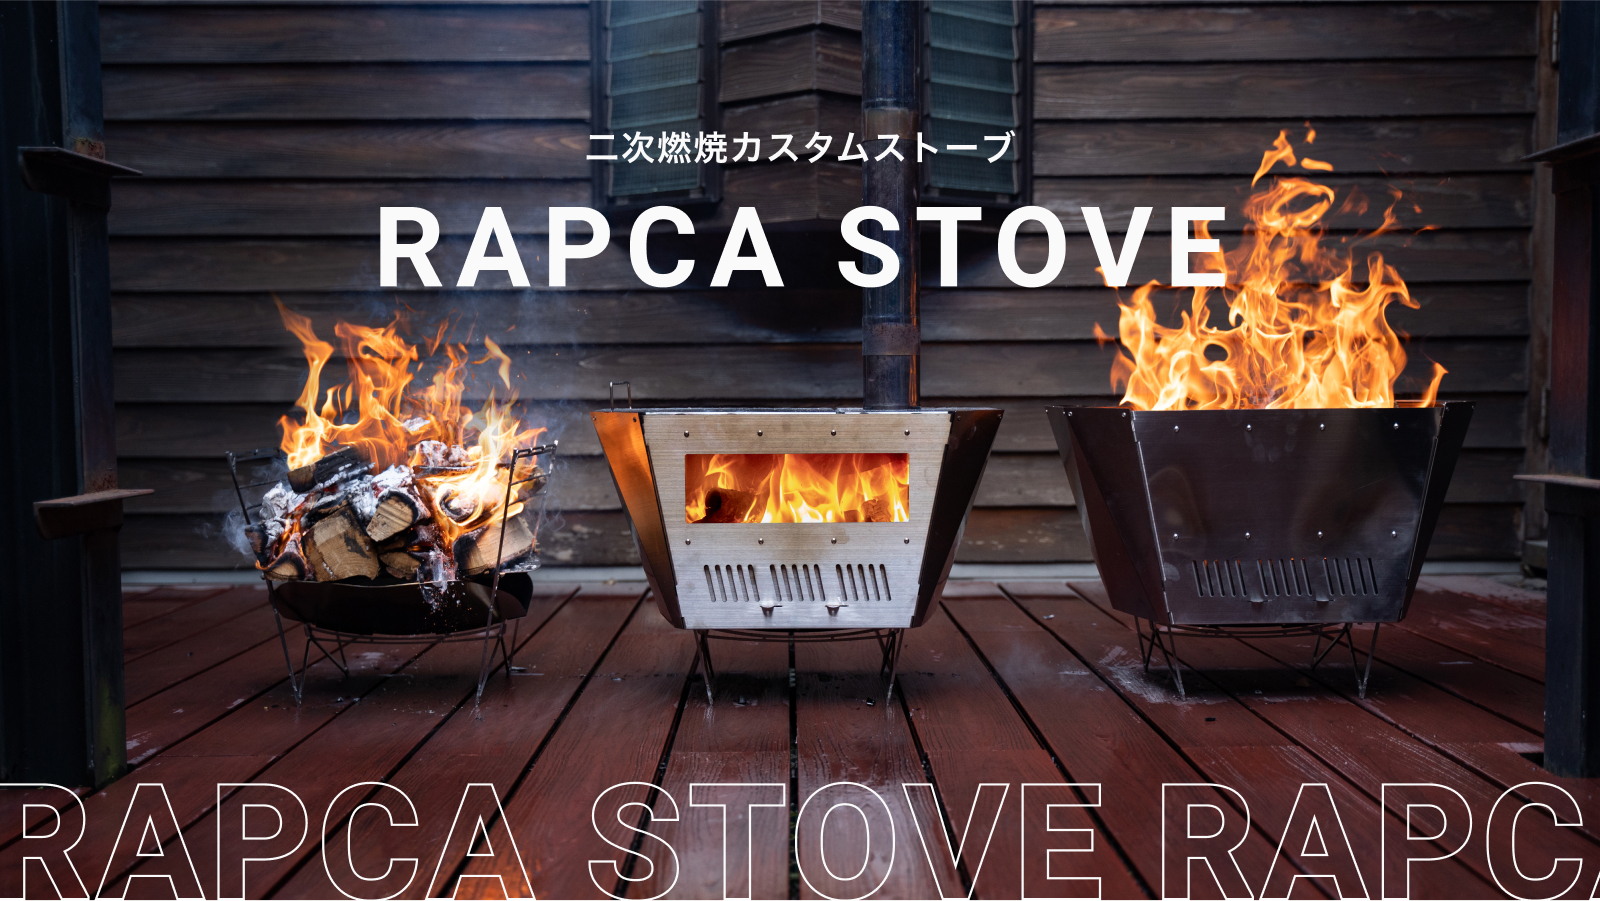 二次燃焼機構搭載の3 Wayカスタムストーブ Rapca Stove が誕生 Fvcのプレスリリース